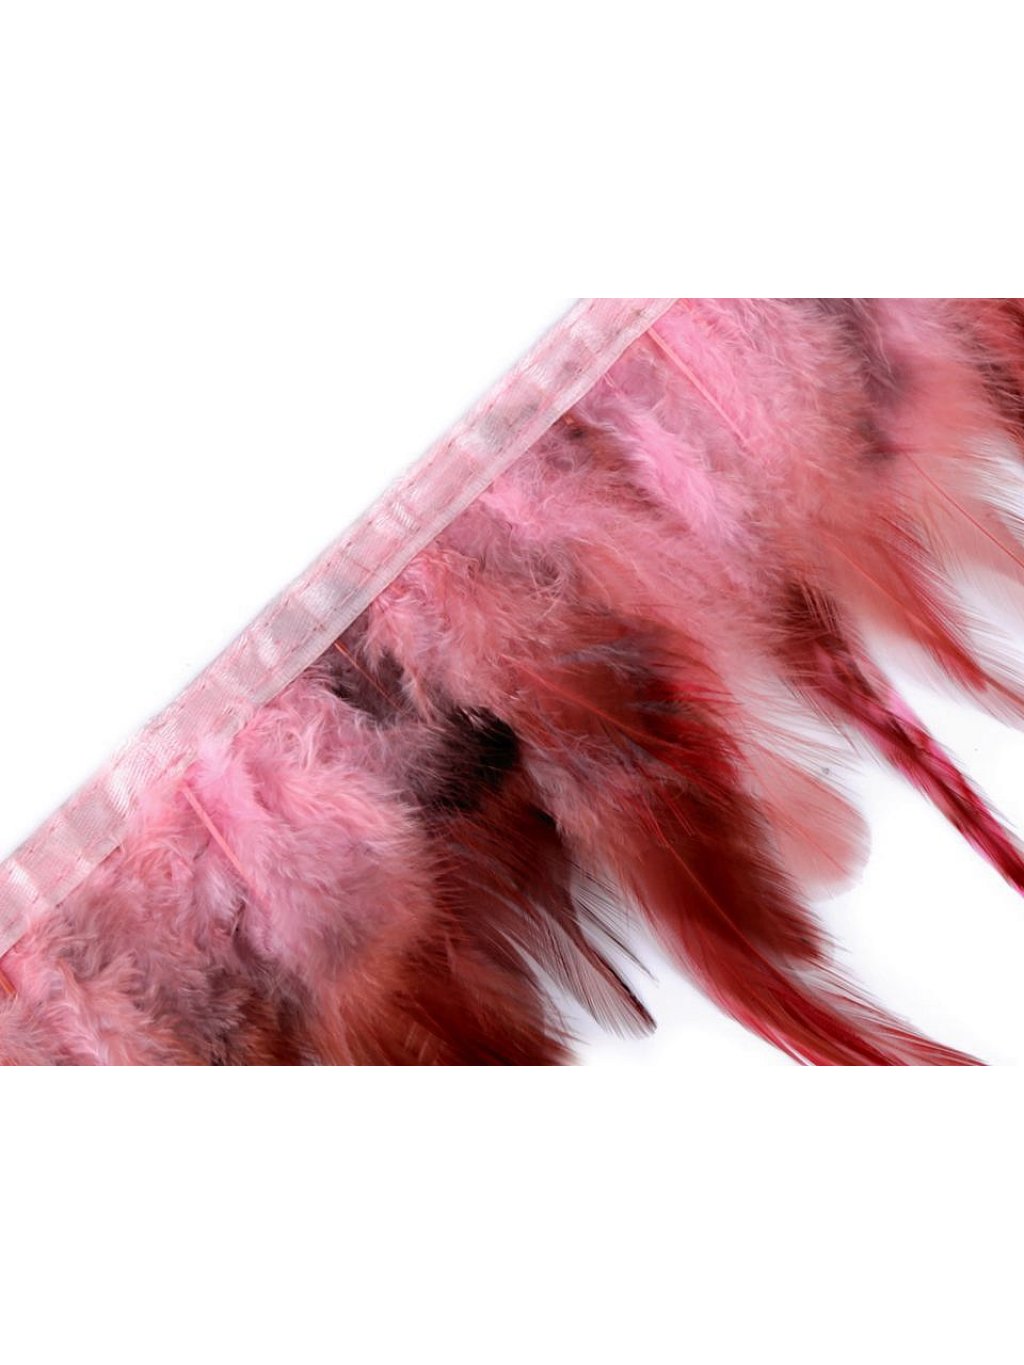 Prýmek - kohoutí peří růžové šíře 12 cm